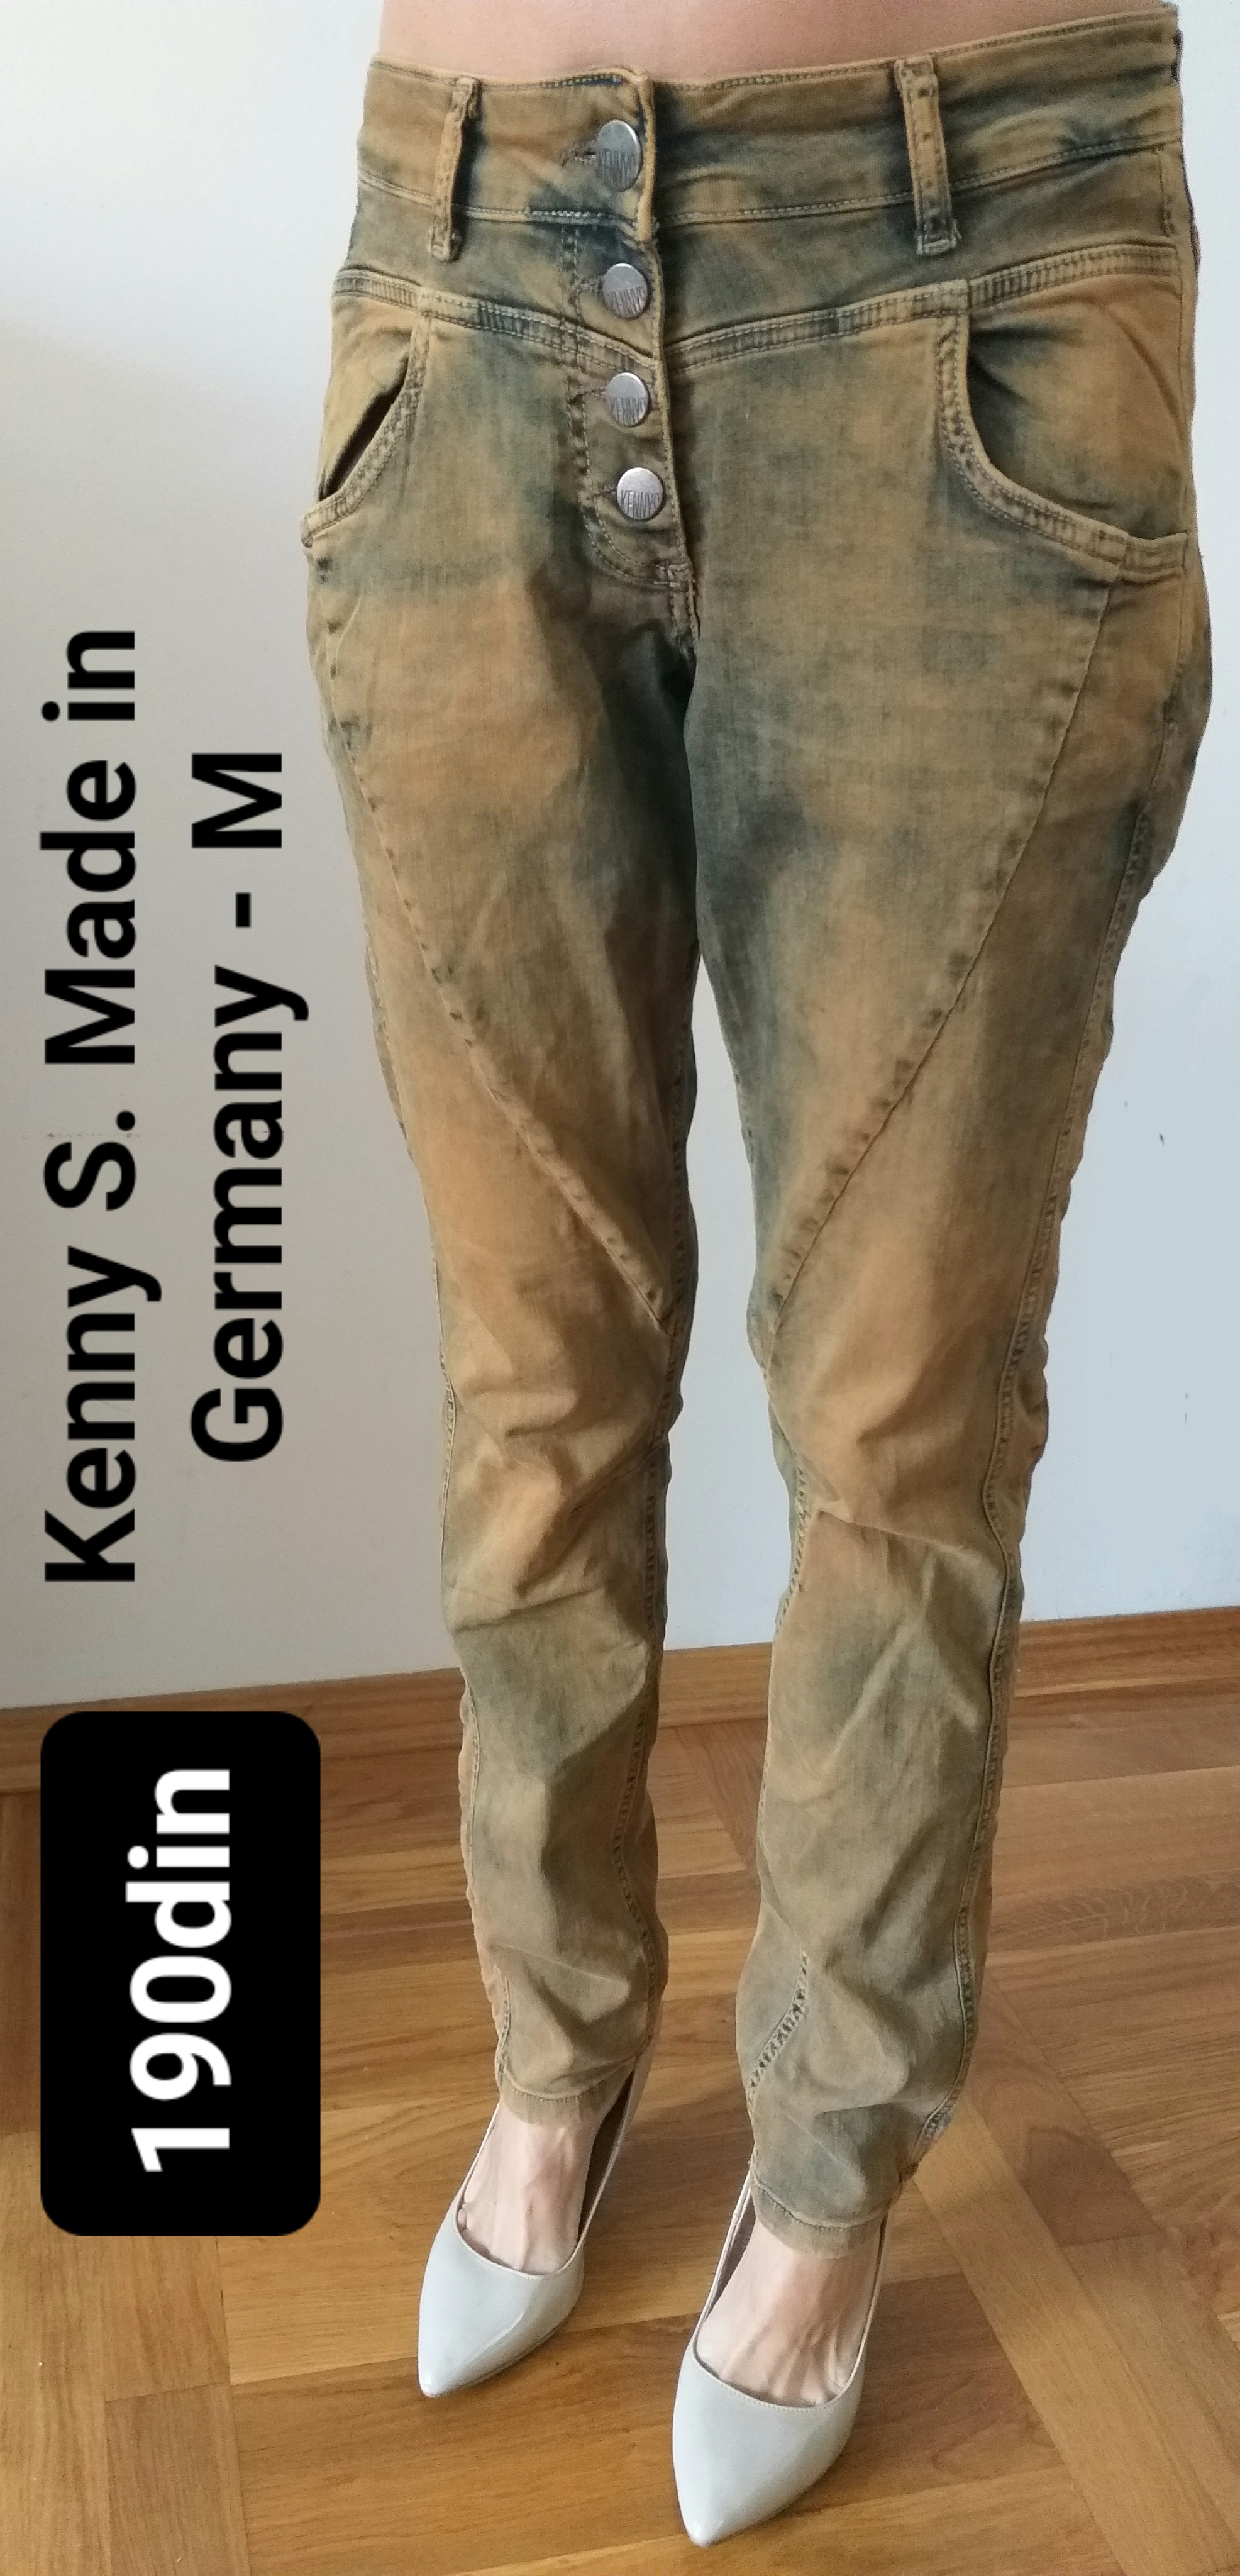 Kenny S Made in Germany ženske teksas farmerke M